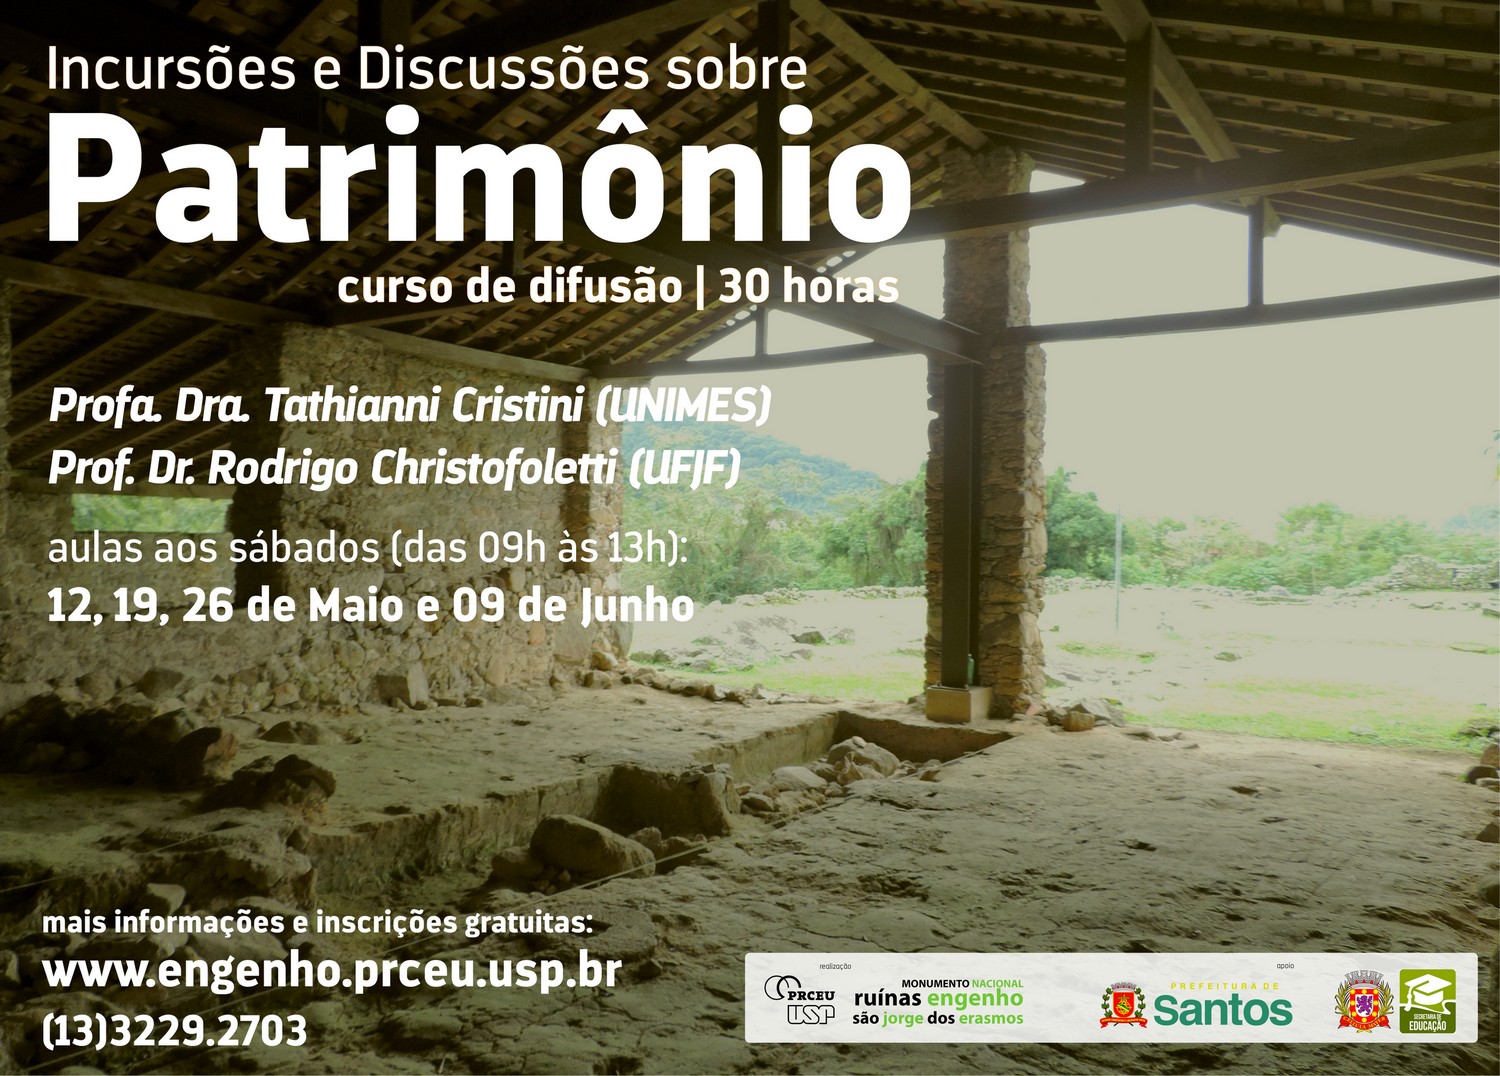 (Português) Curso discute preservação do patrimônio histórico, cultural e ambiental